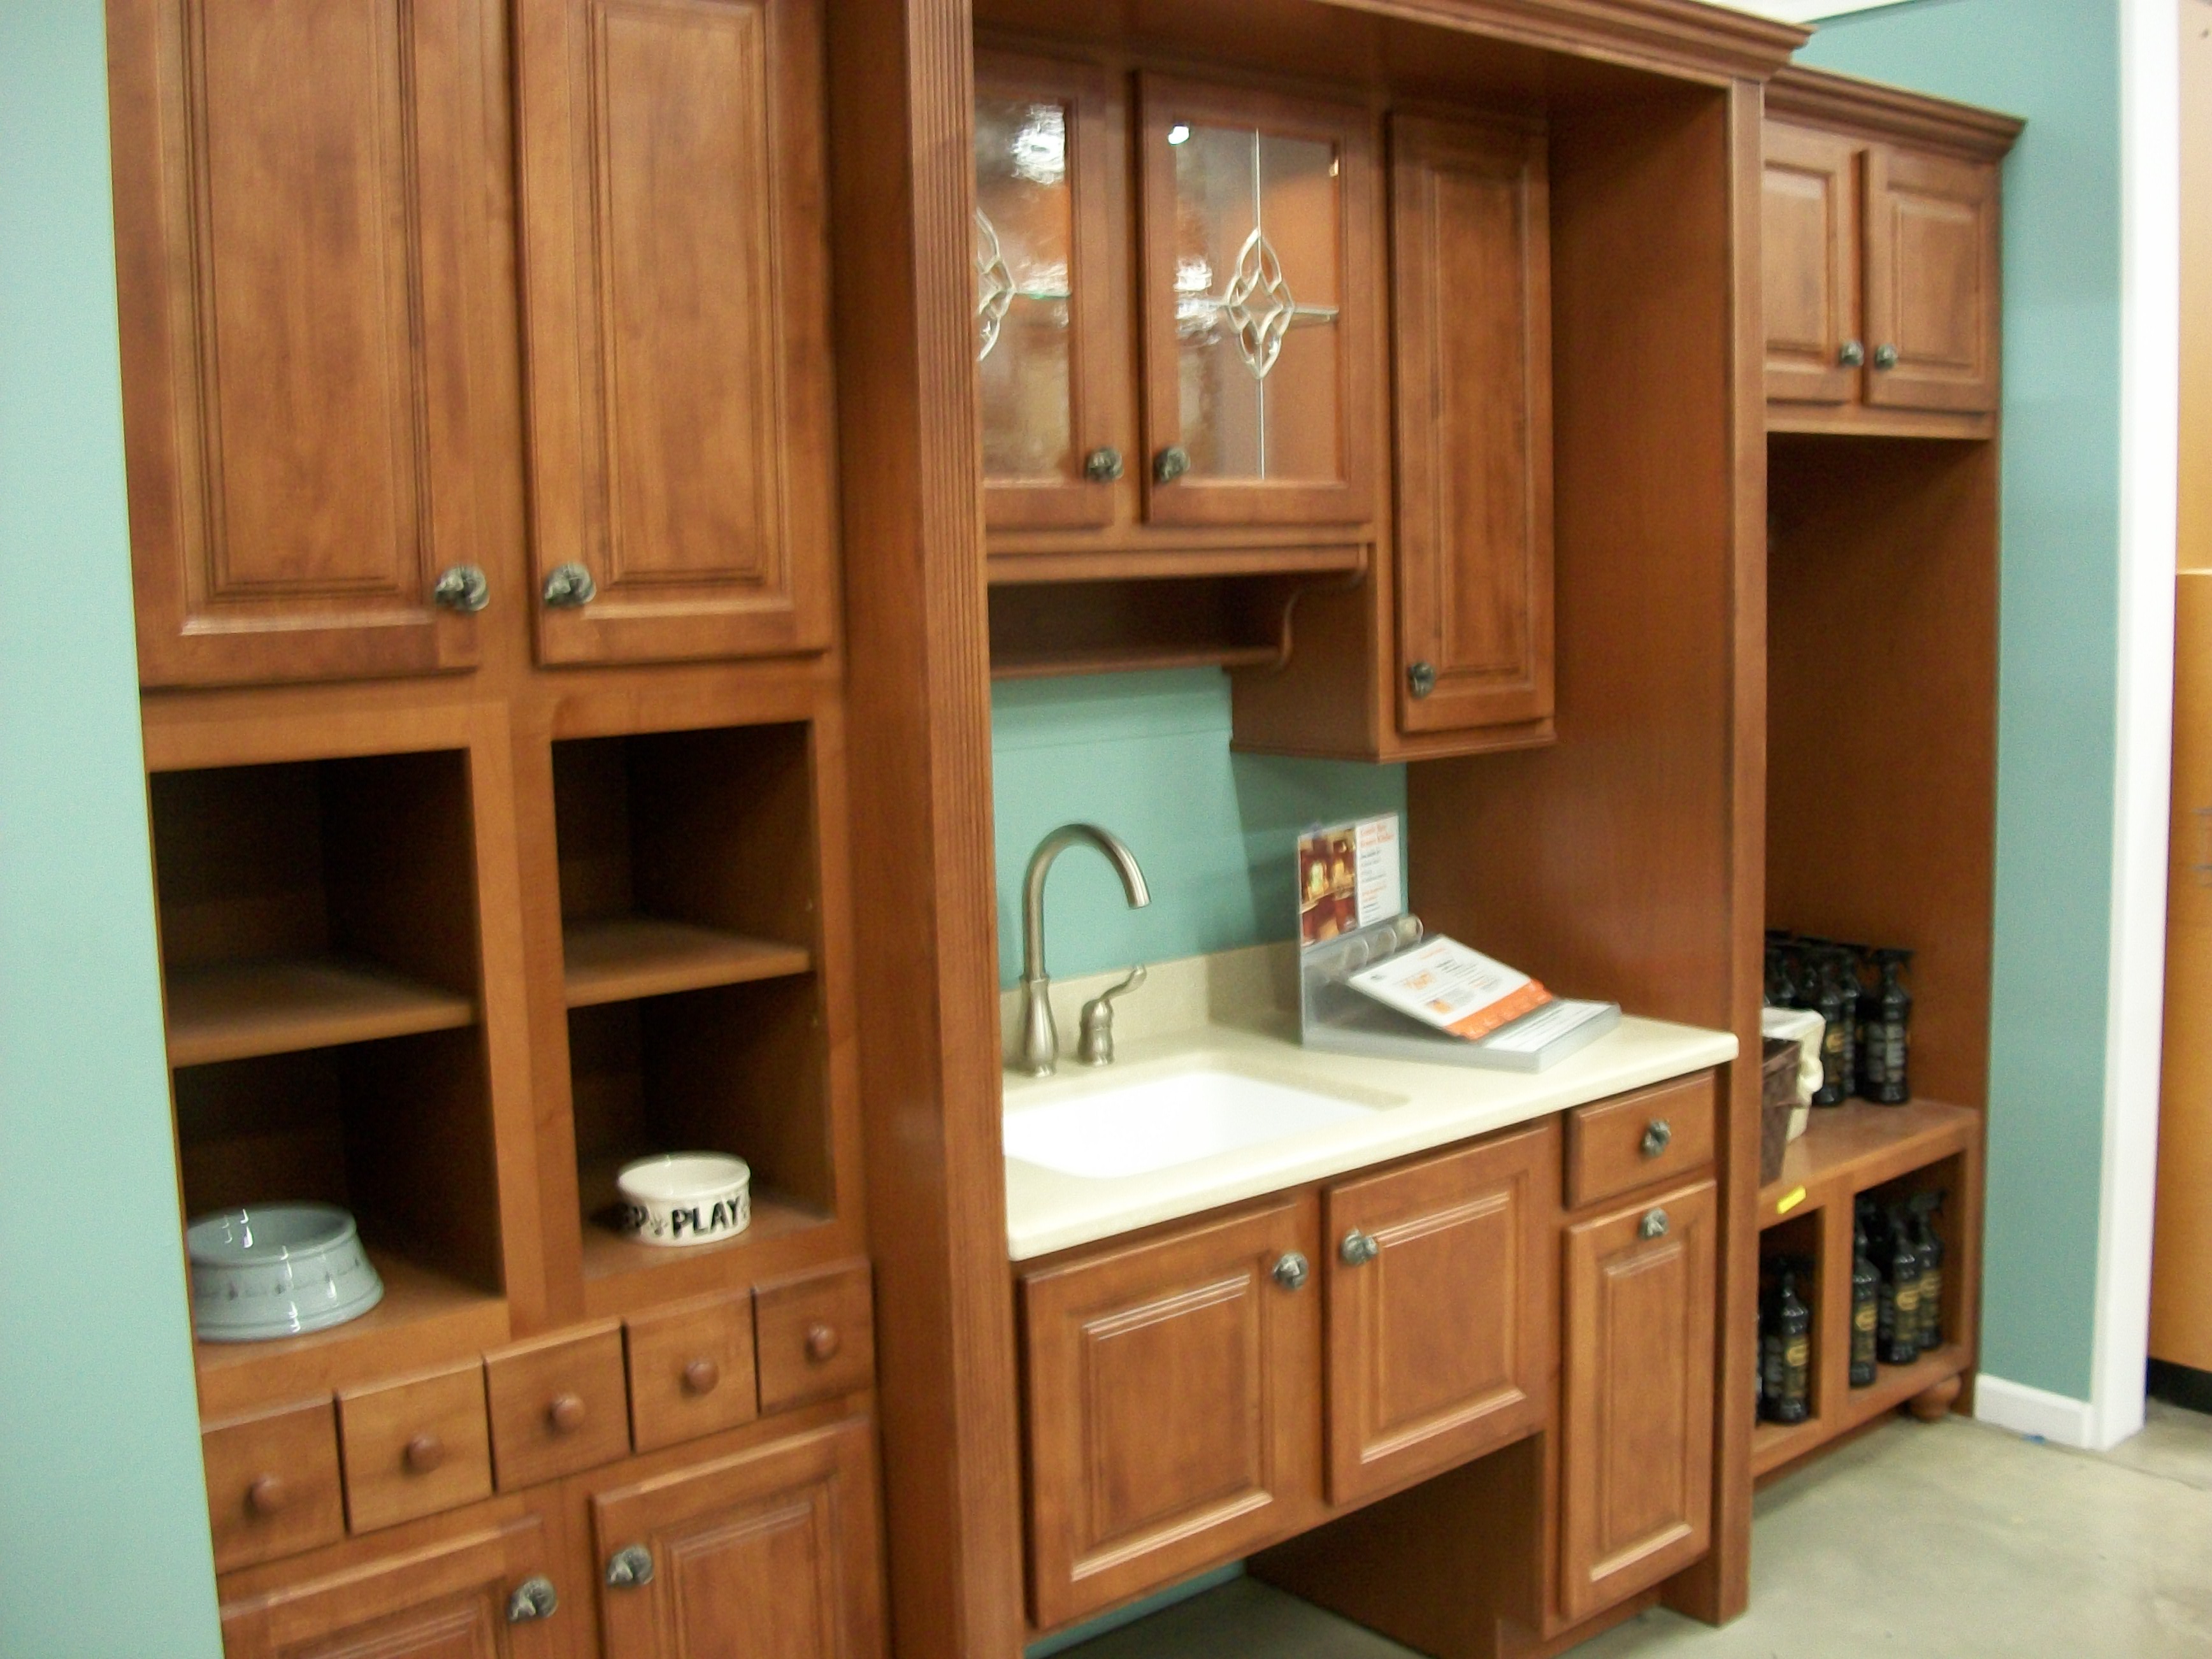 Description Kitchen cabinet display in 2009.jpg